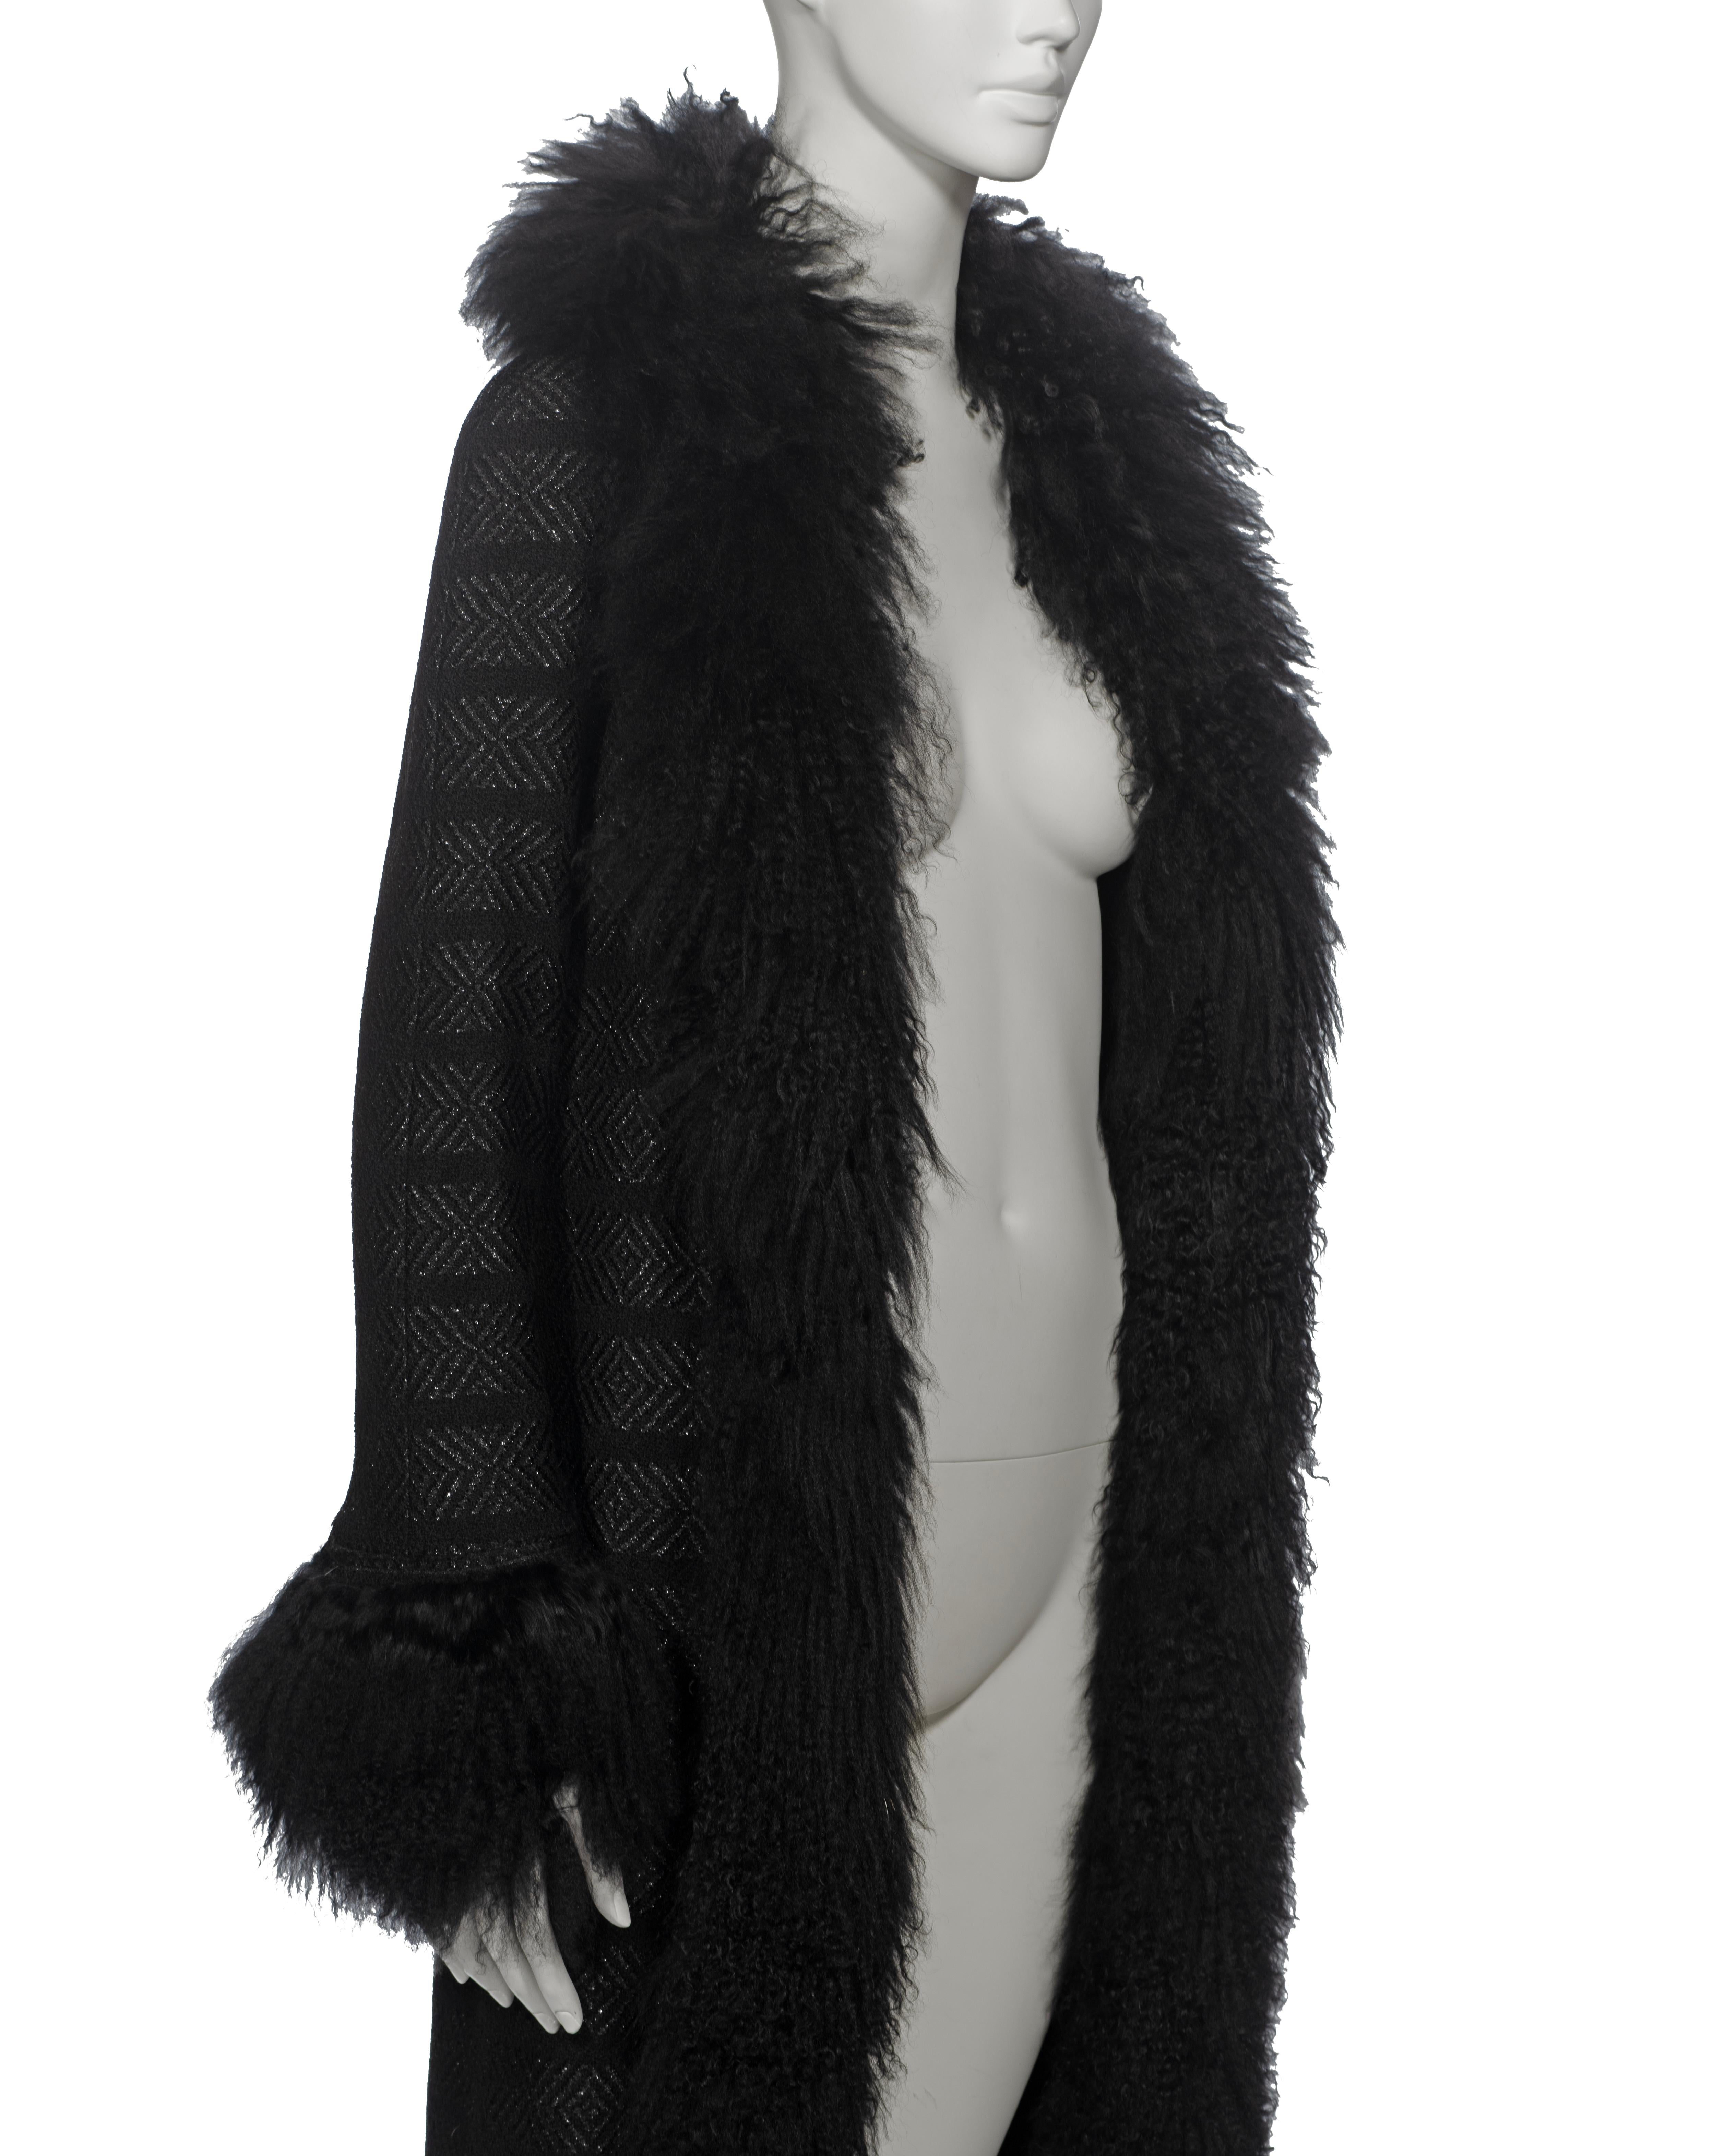 Chanel by Karl Lagerfeld Black Tweed Wool and Tibetan Lamb Fur Coat, fw 2008 2